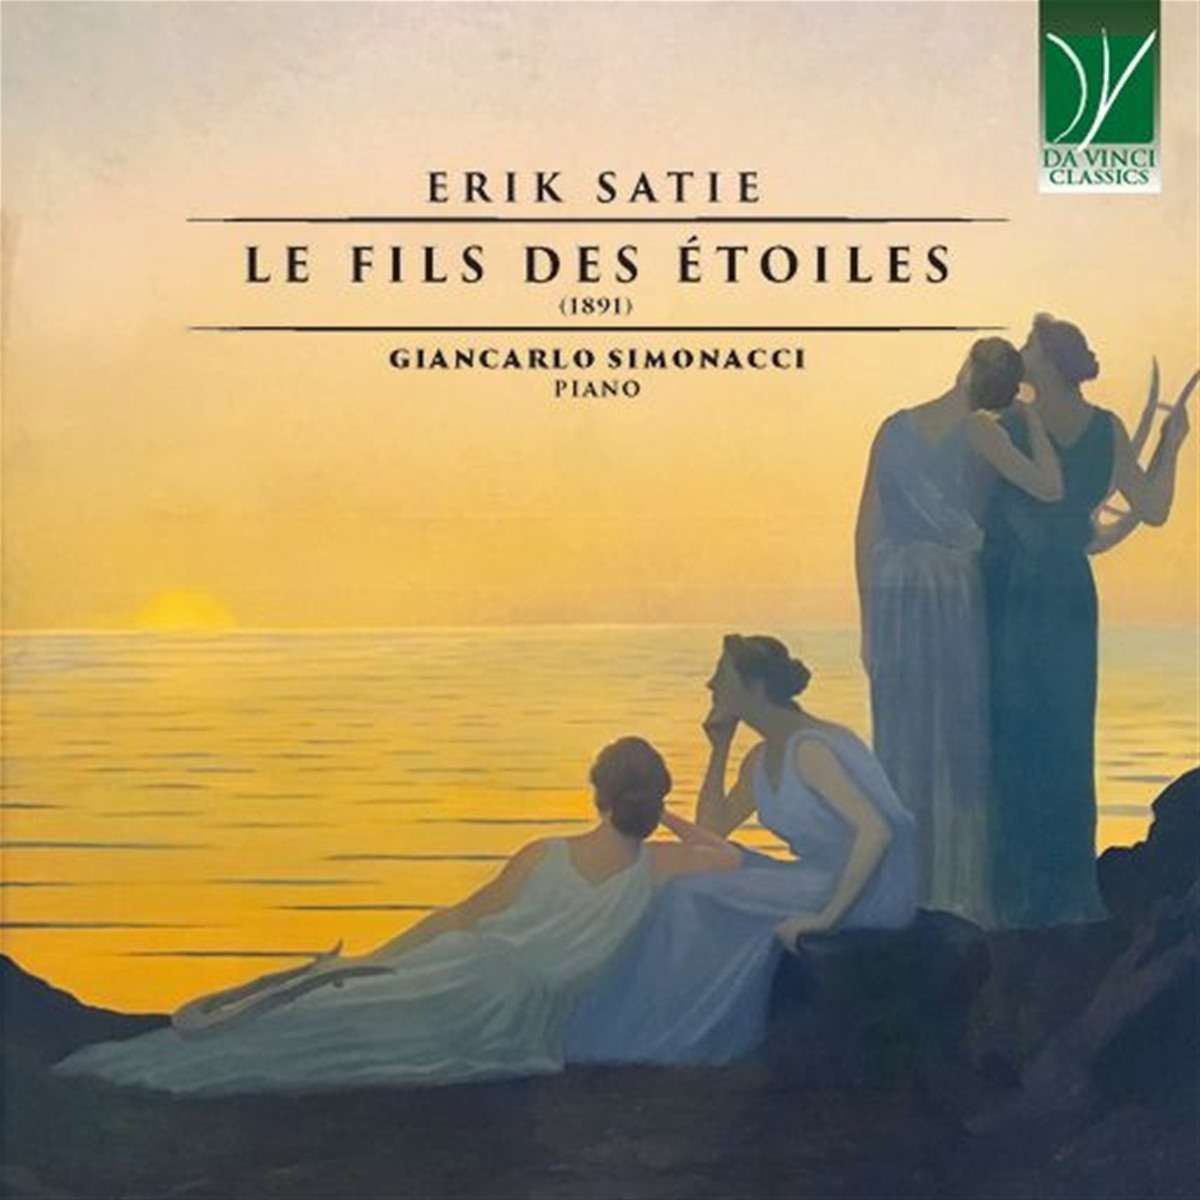 ERIK SATIE: LE FILS DES ÉTOILES (1891)